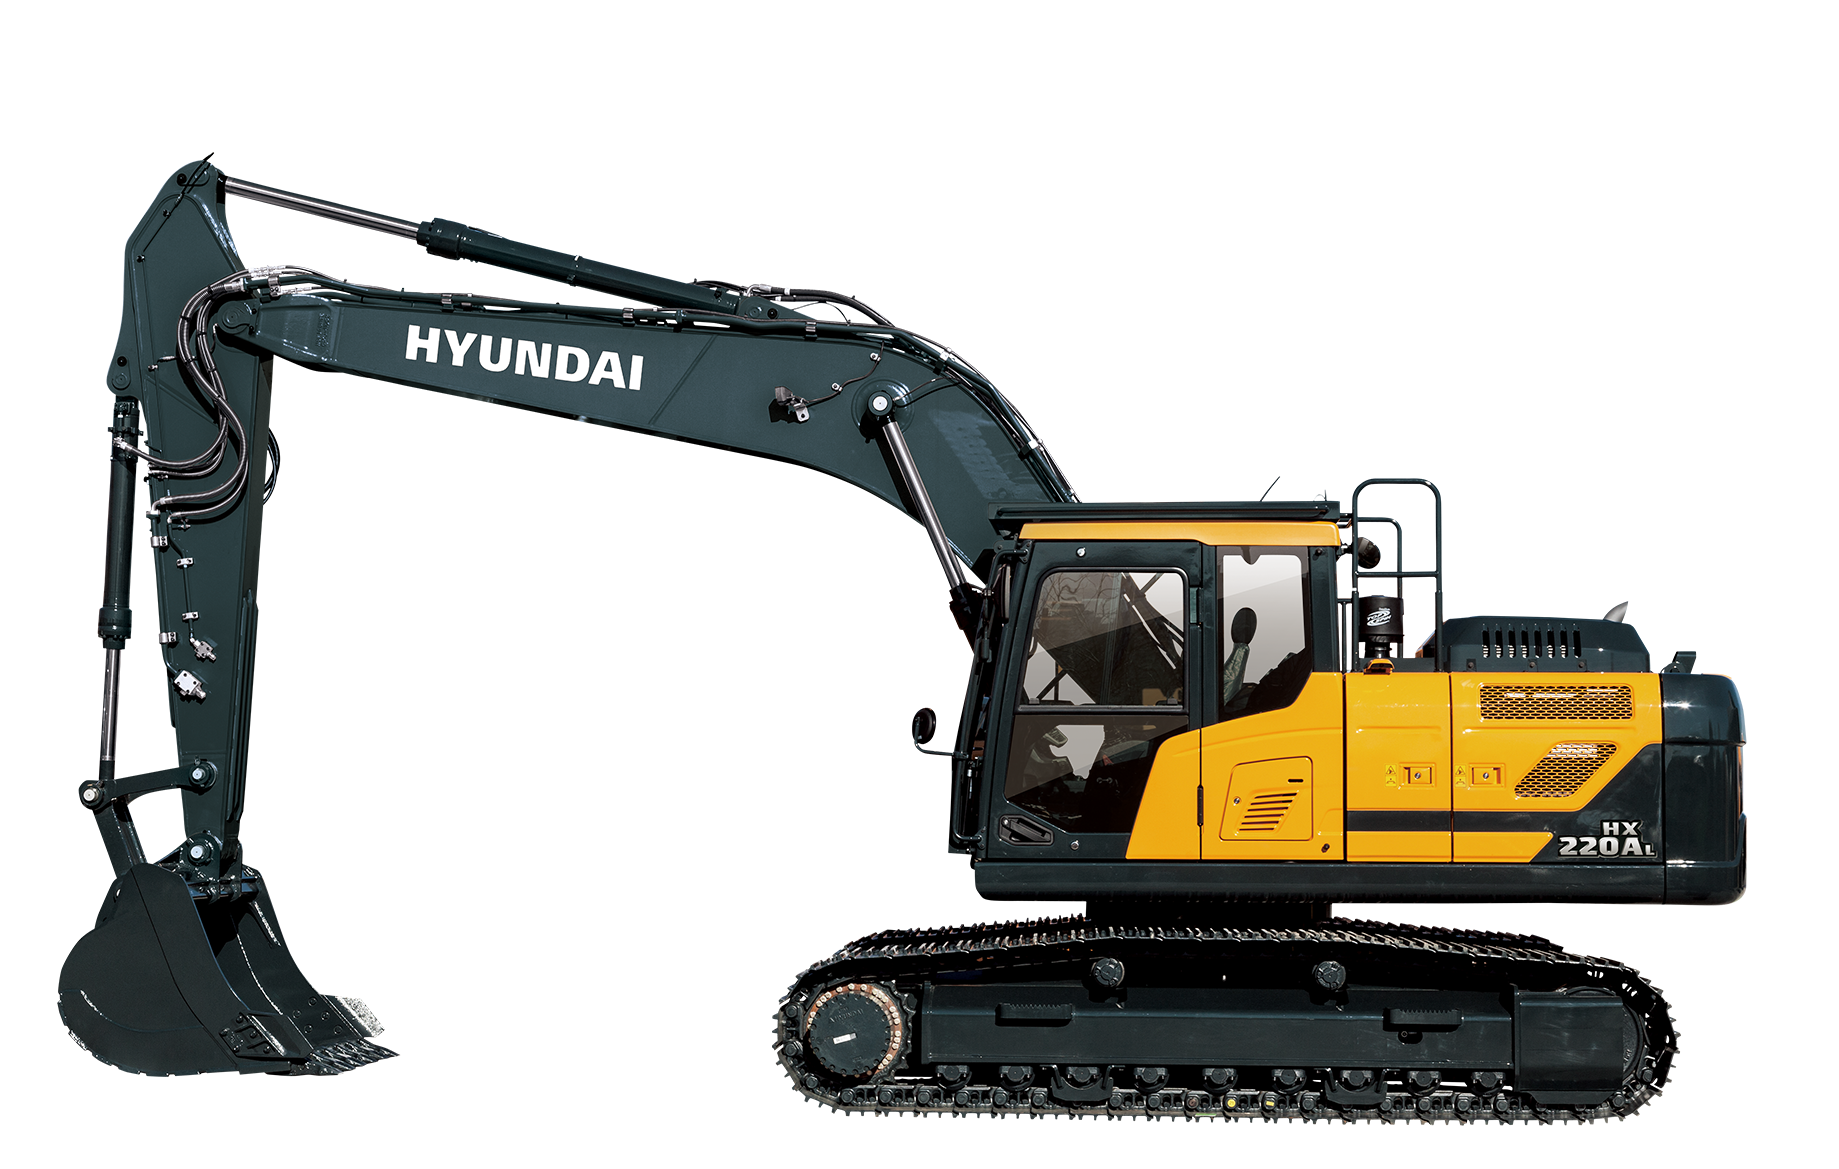 Hyundai Crawler Excavators